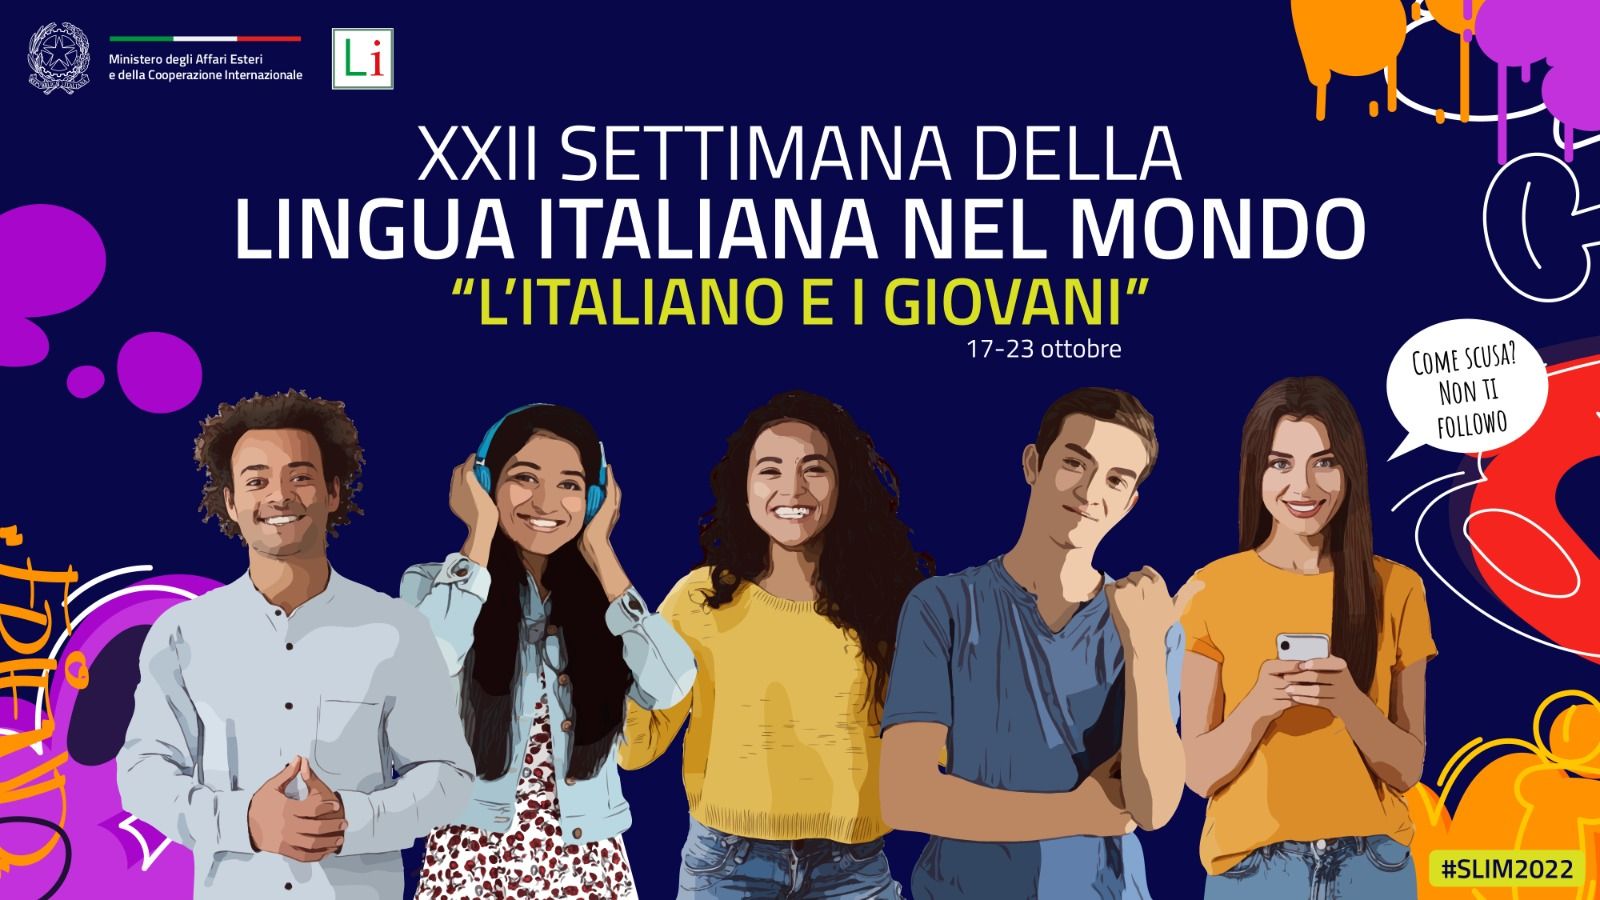 XXII Settimana della Lingua Italiana nel Mondo